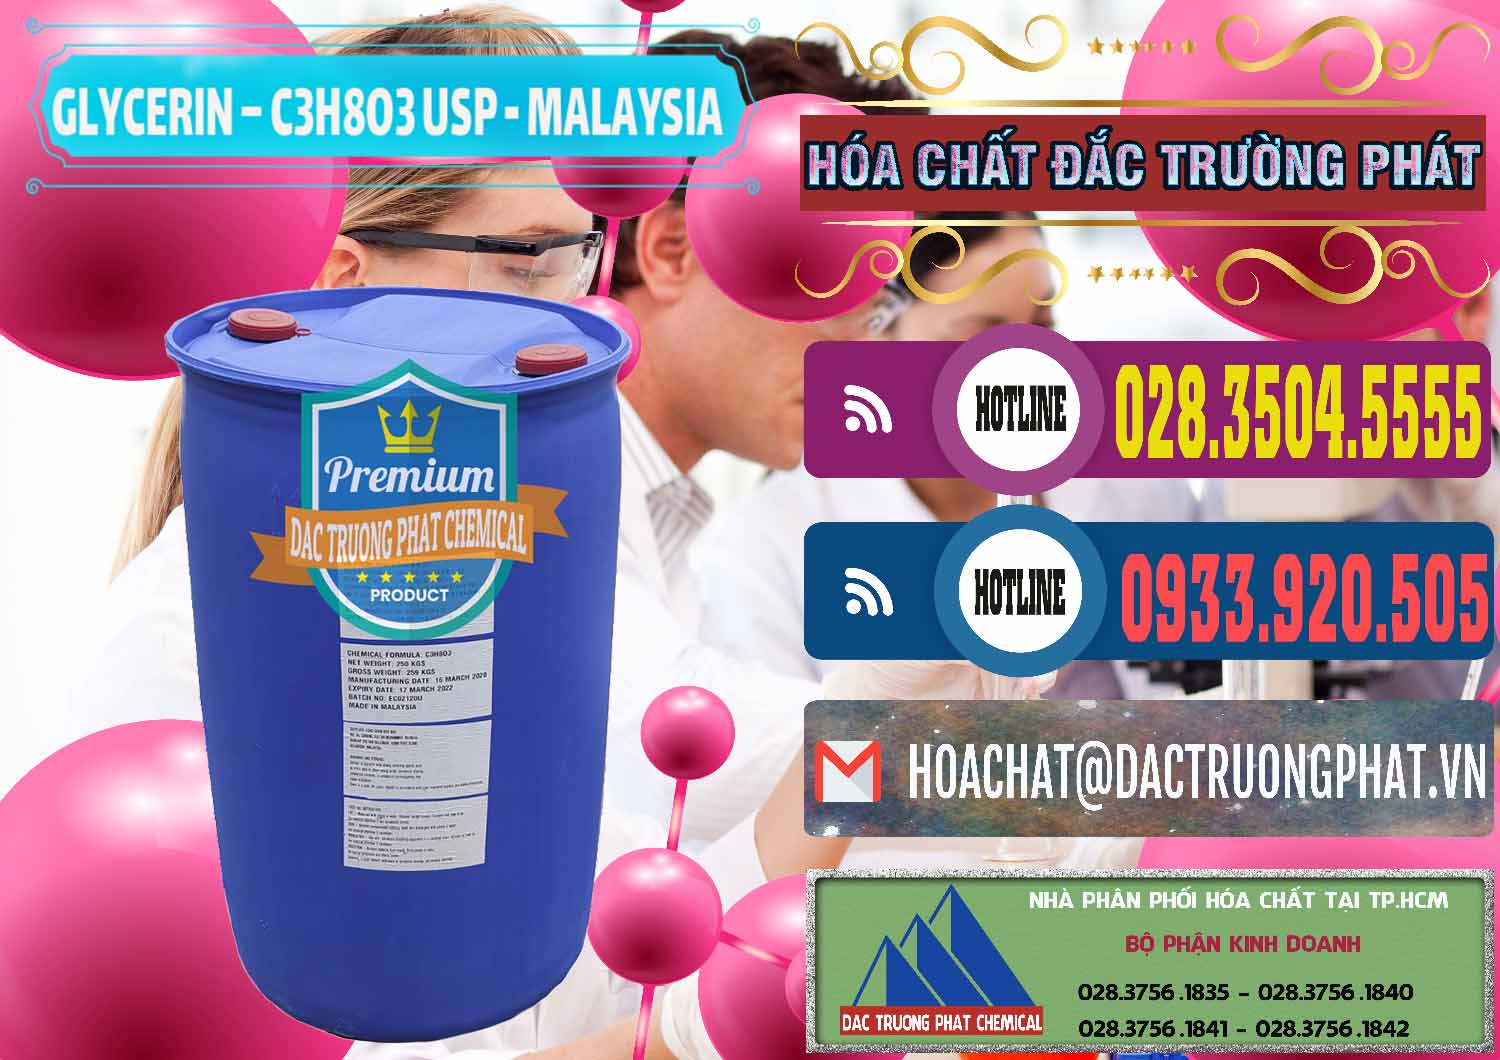 Cung ứng & bán Glycerin – C3H8O3 USP Malaysia - 0233 - Đơn vị chuyên cung ứng - phân phối hóa chất tại TP.HCM - muabanhoachat.com.vn